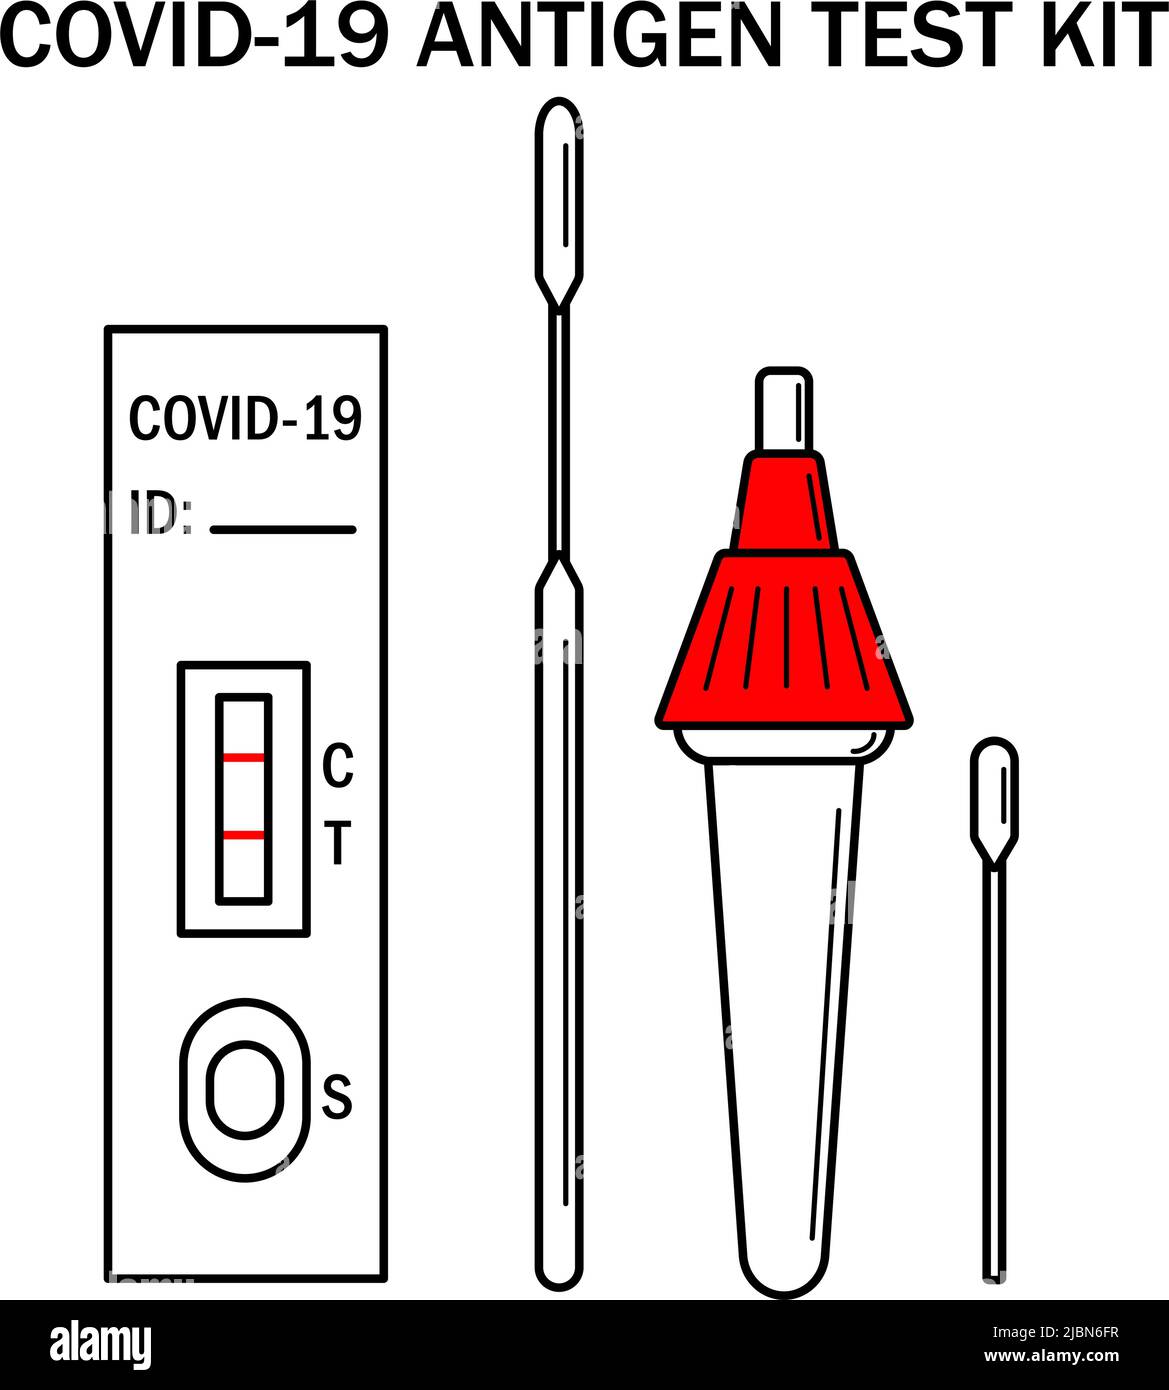 Illustrazione delle istruzioni del kit ATK COVID Rapid Antigen Test. Manuale di test Omicron Epidemic Personal PCR Express. Icone del kit per test casa Covid-19. Coronavirus anticorpo vettore ematico contorno flat banner Illustrazione Vettoriale